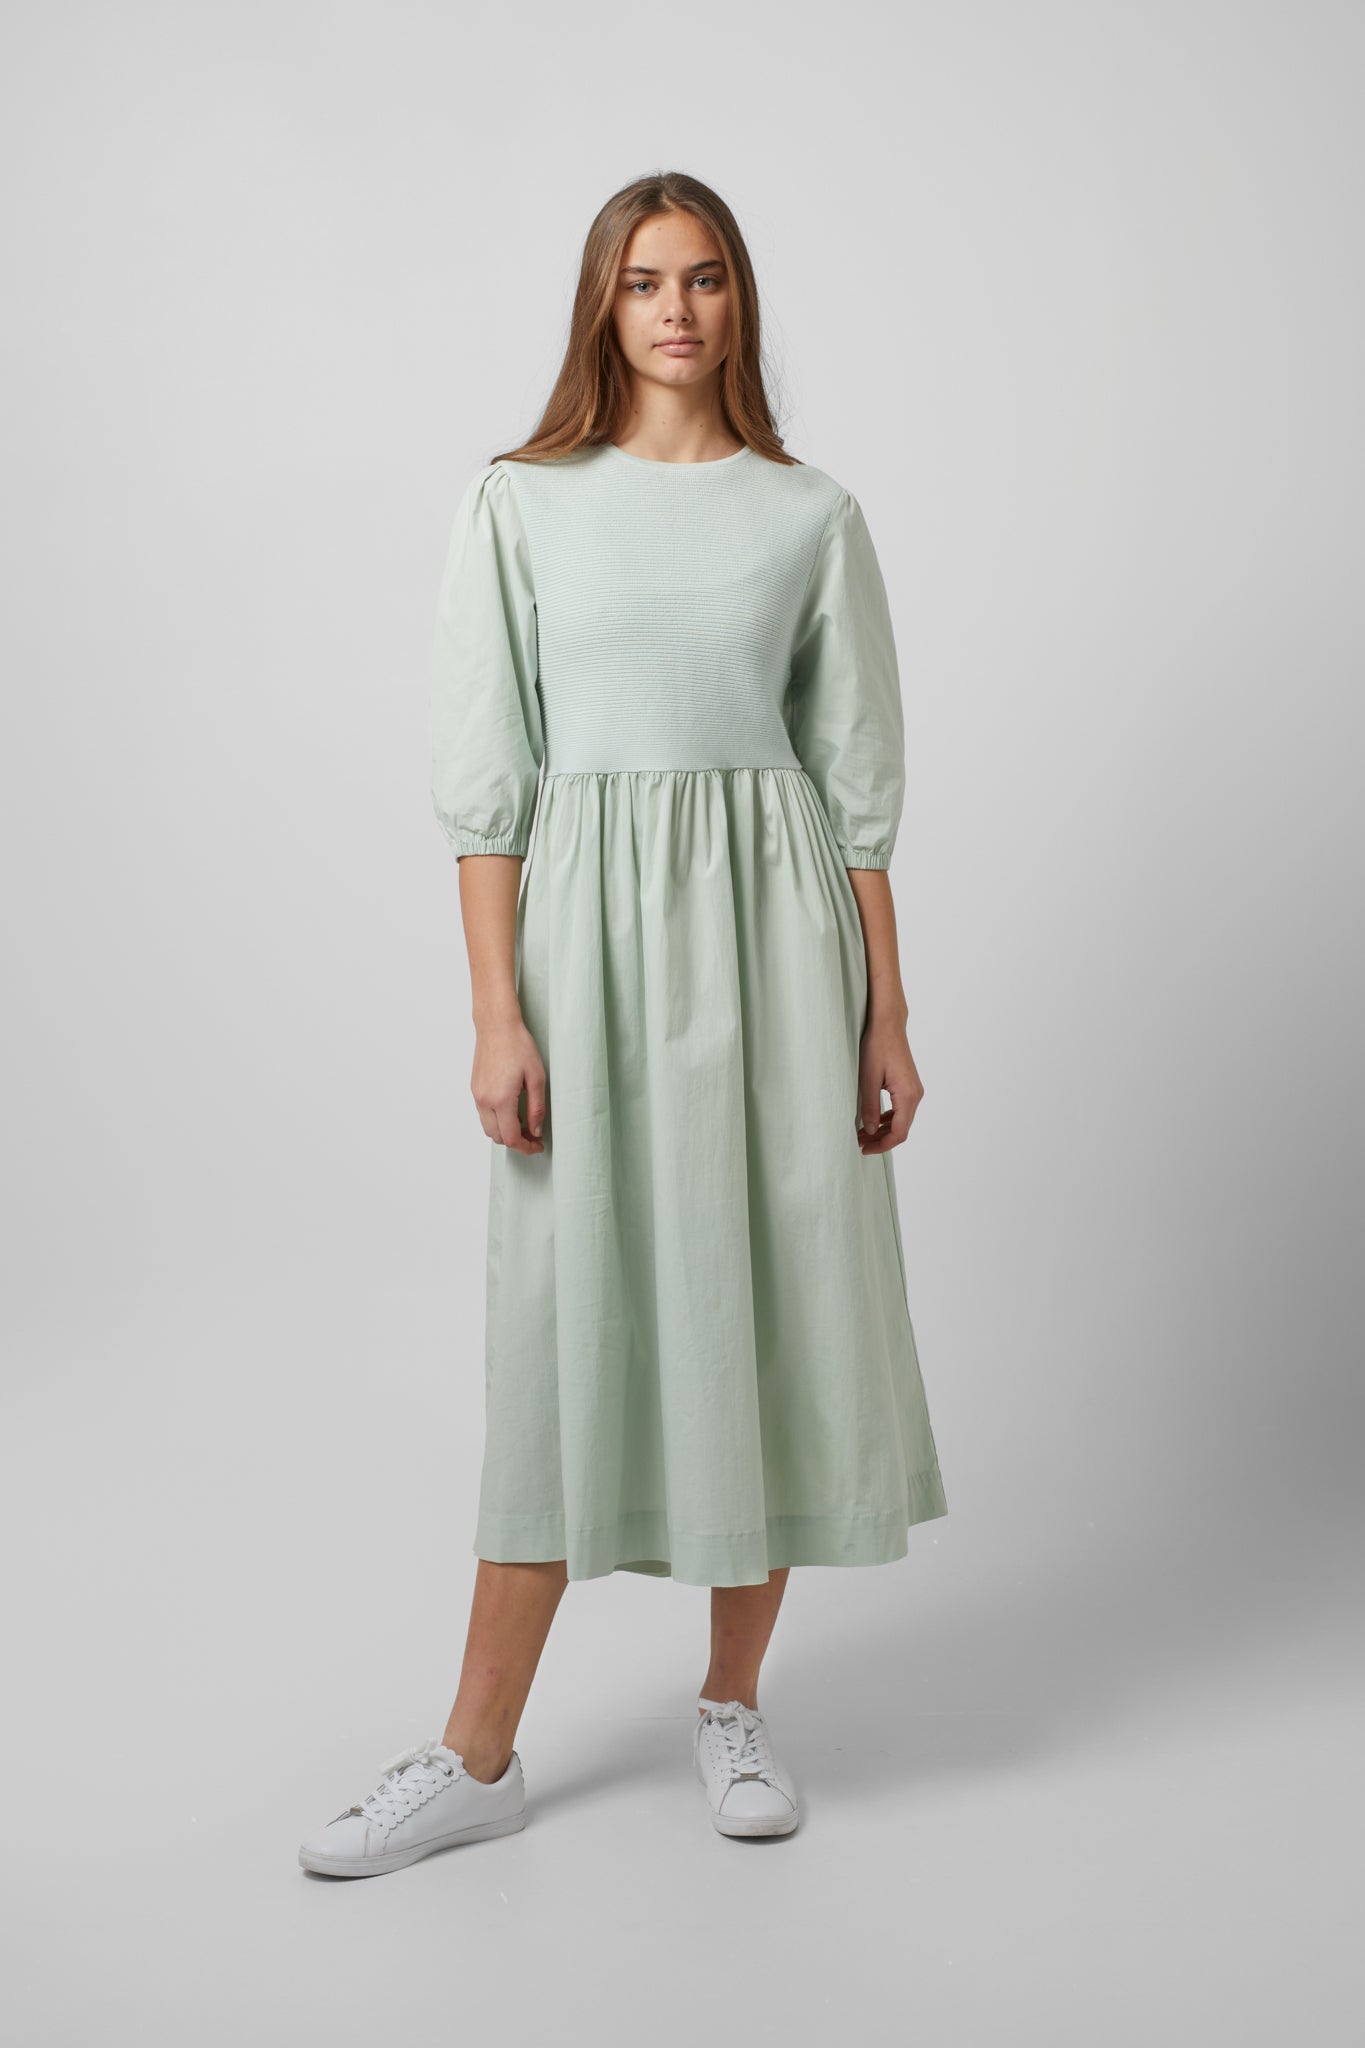 Mint Dress #7907